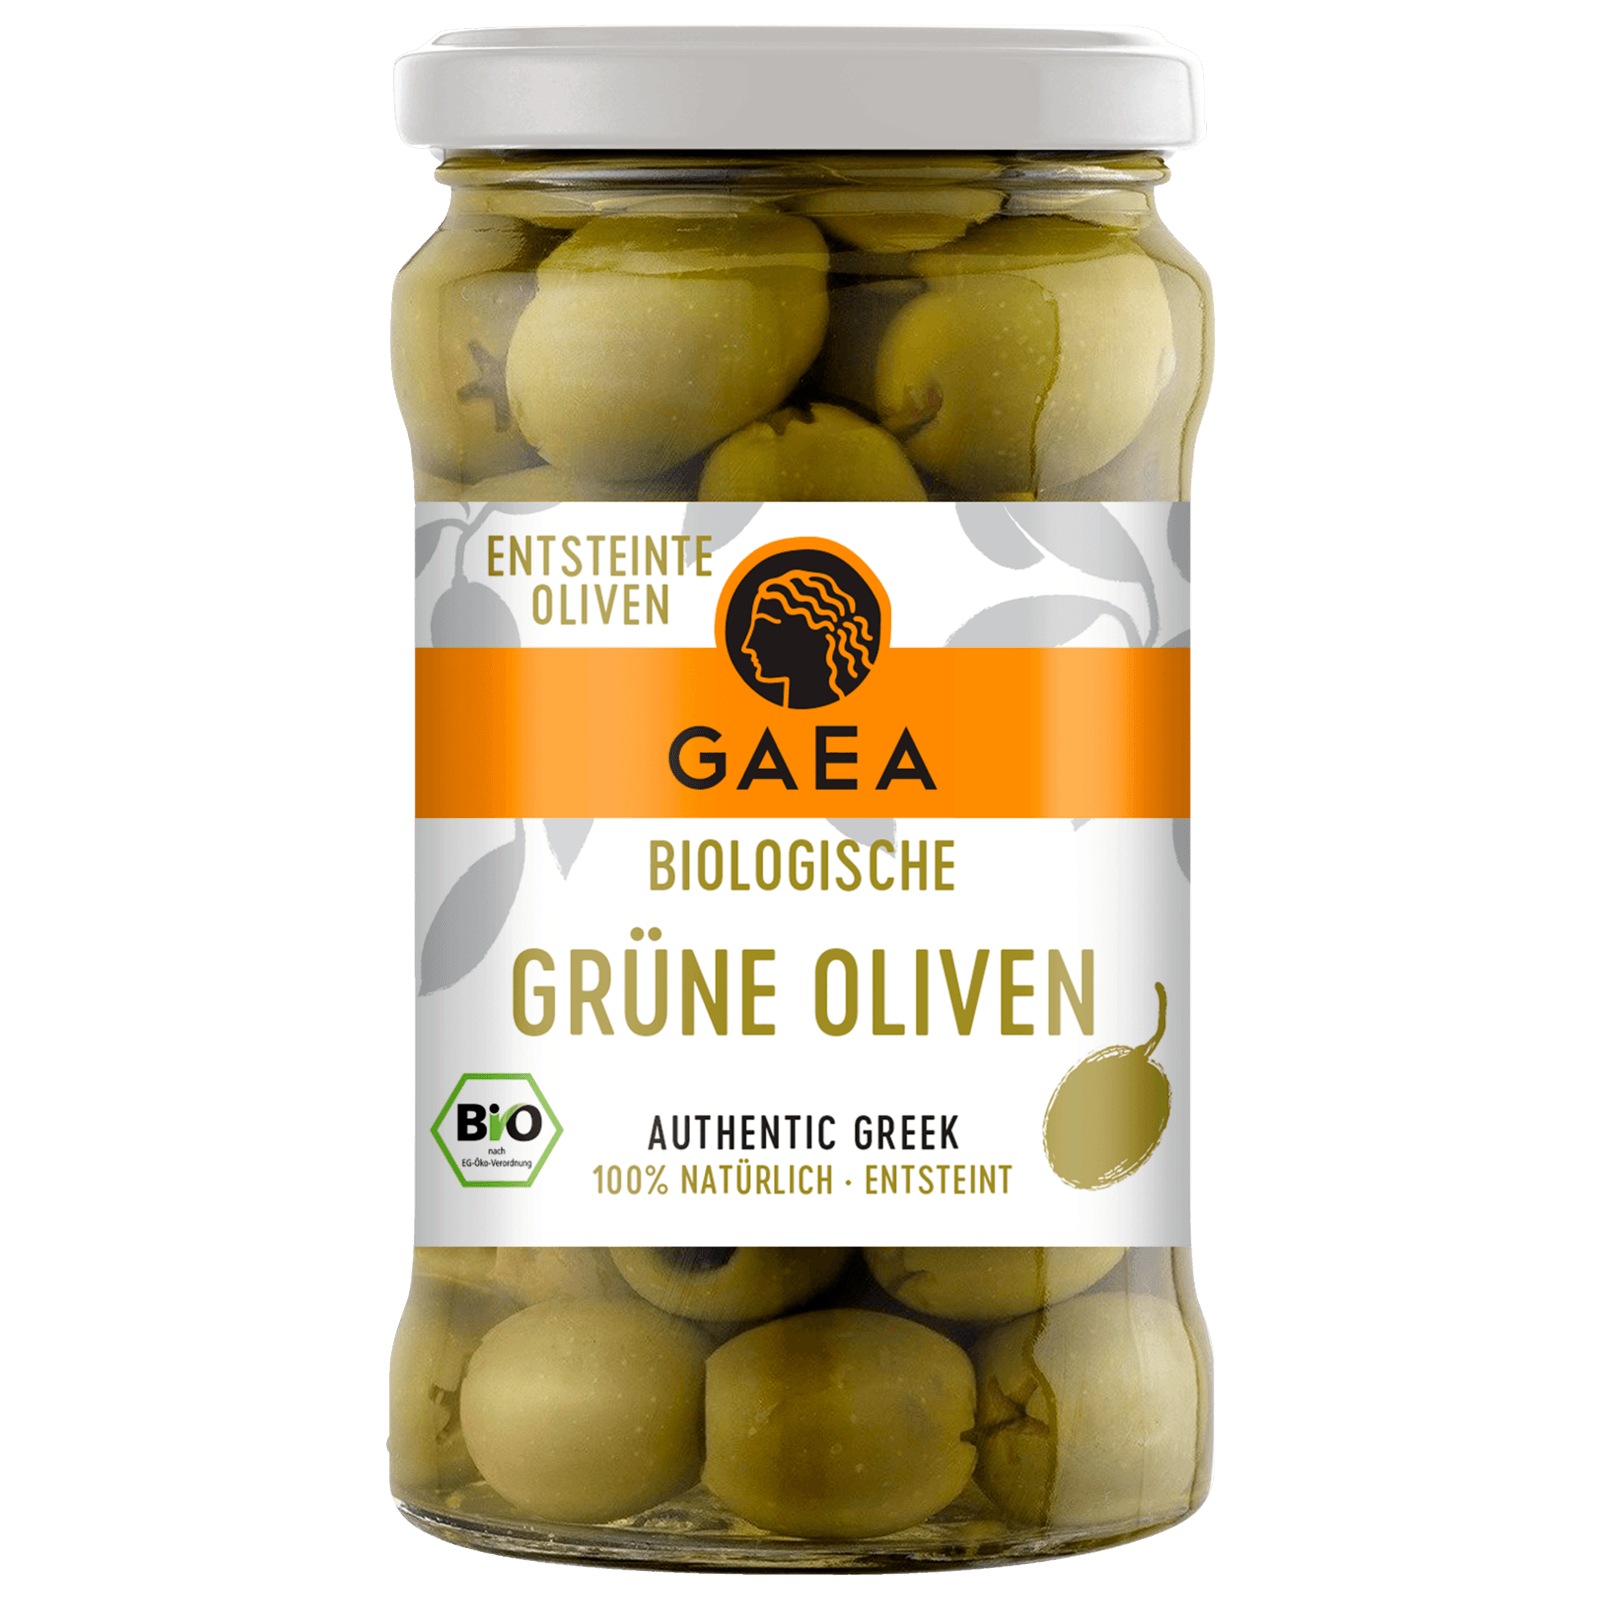 Gaea Bio Grüne Oliven 140g bei REWE online bestellen!